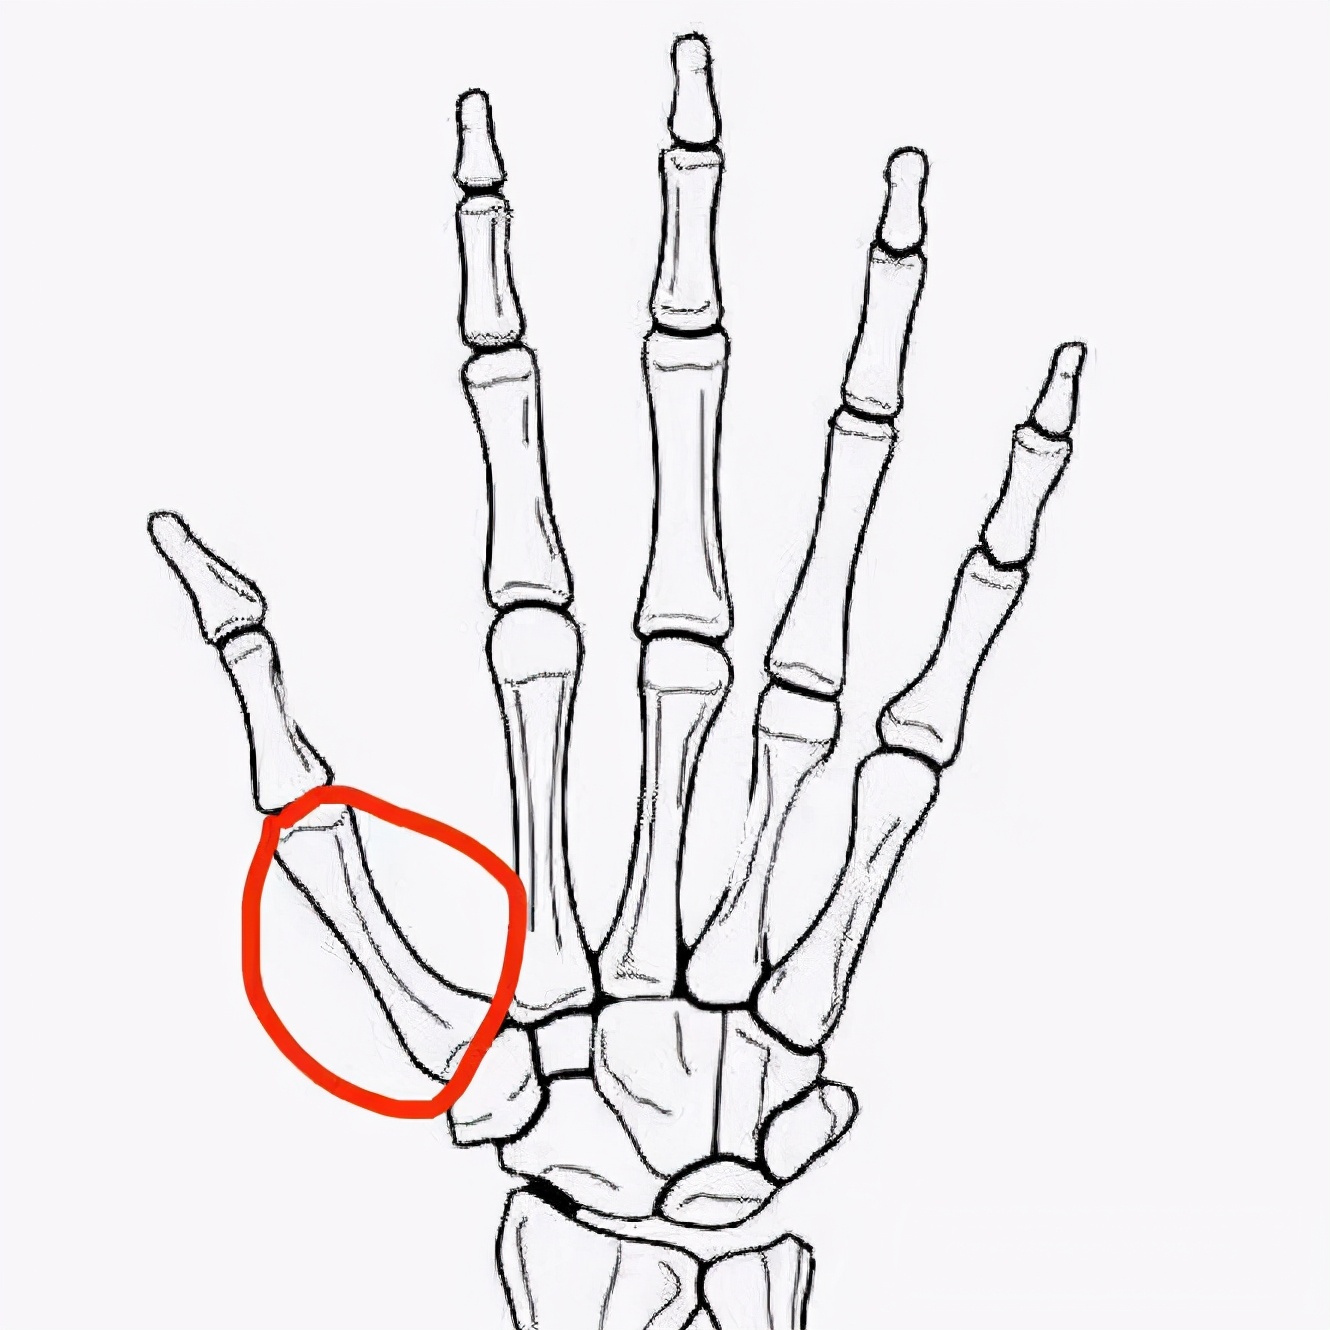 红色圈中的为第一掌骨,漂浮拇患者缺失了这根骨头因为得了这种病的